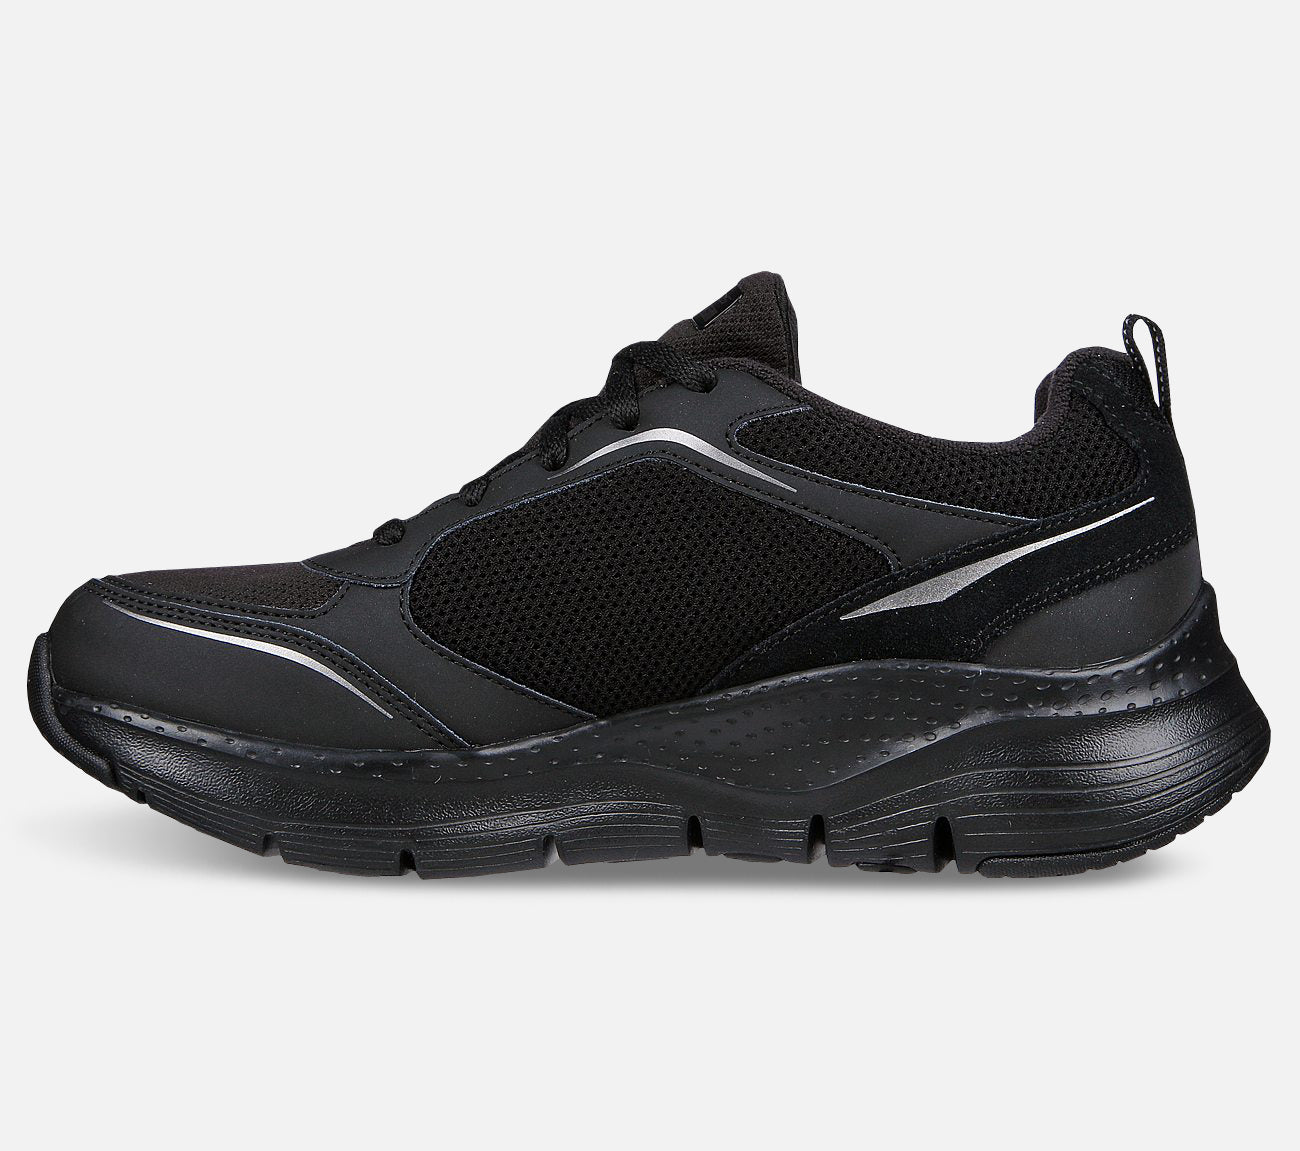 Arch Fit – New Energy Waterproof Shoe Skechers